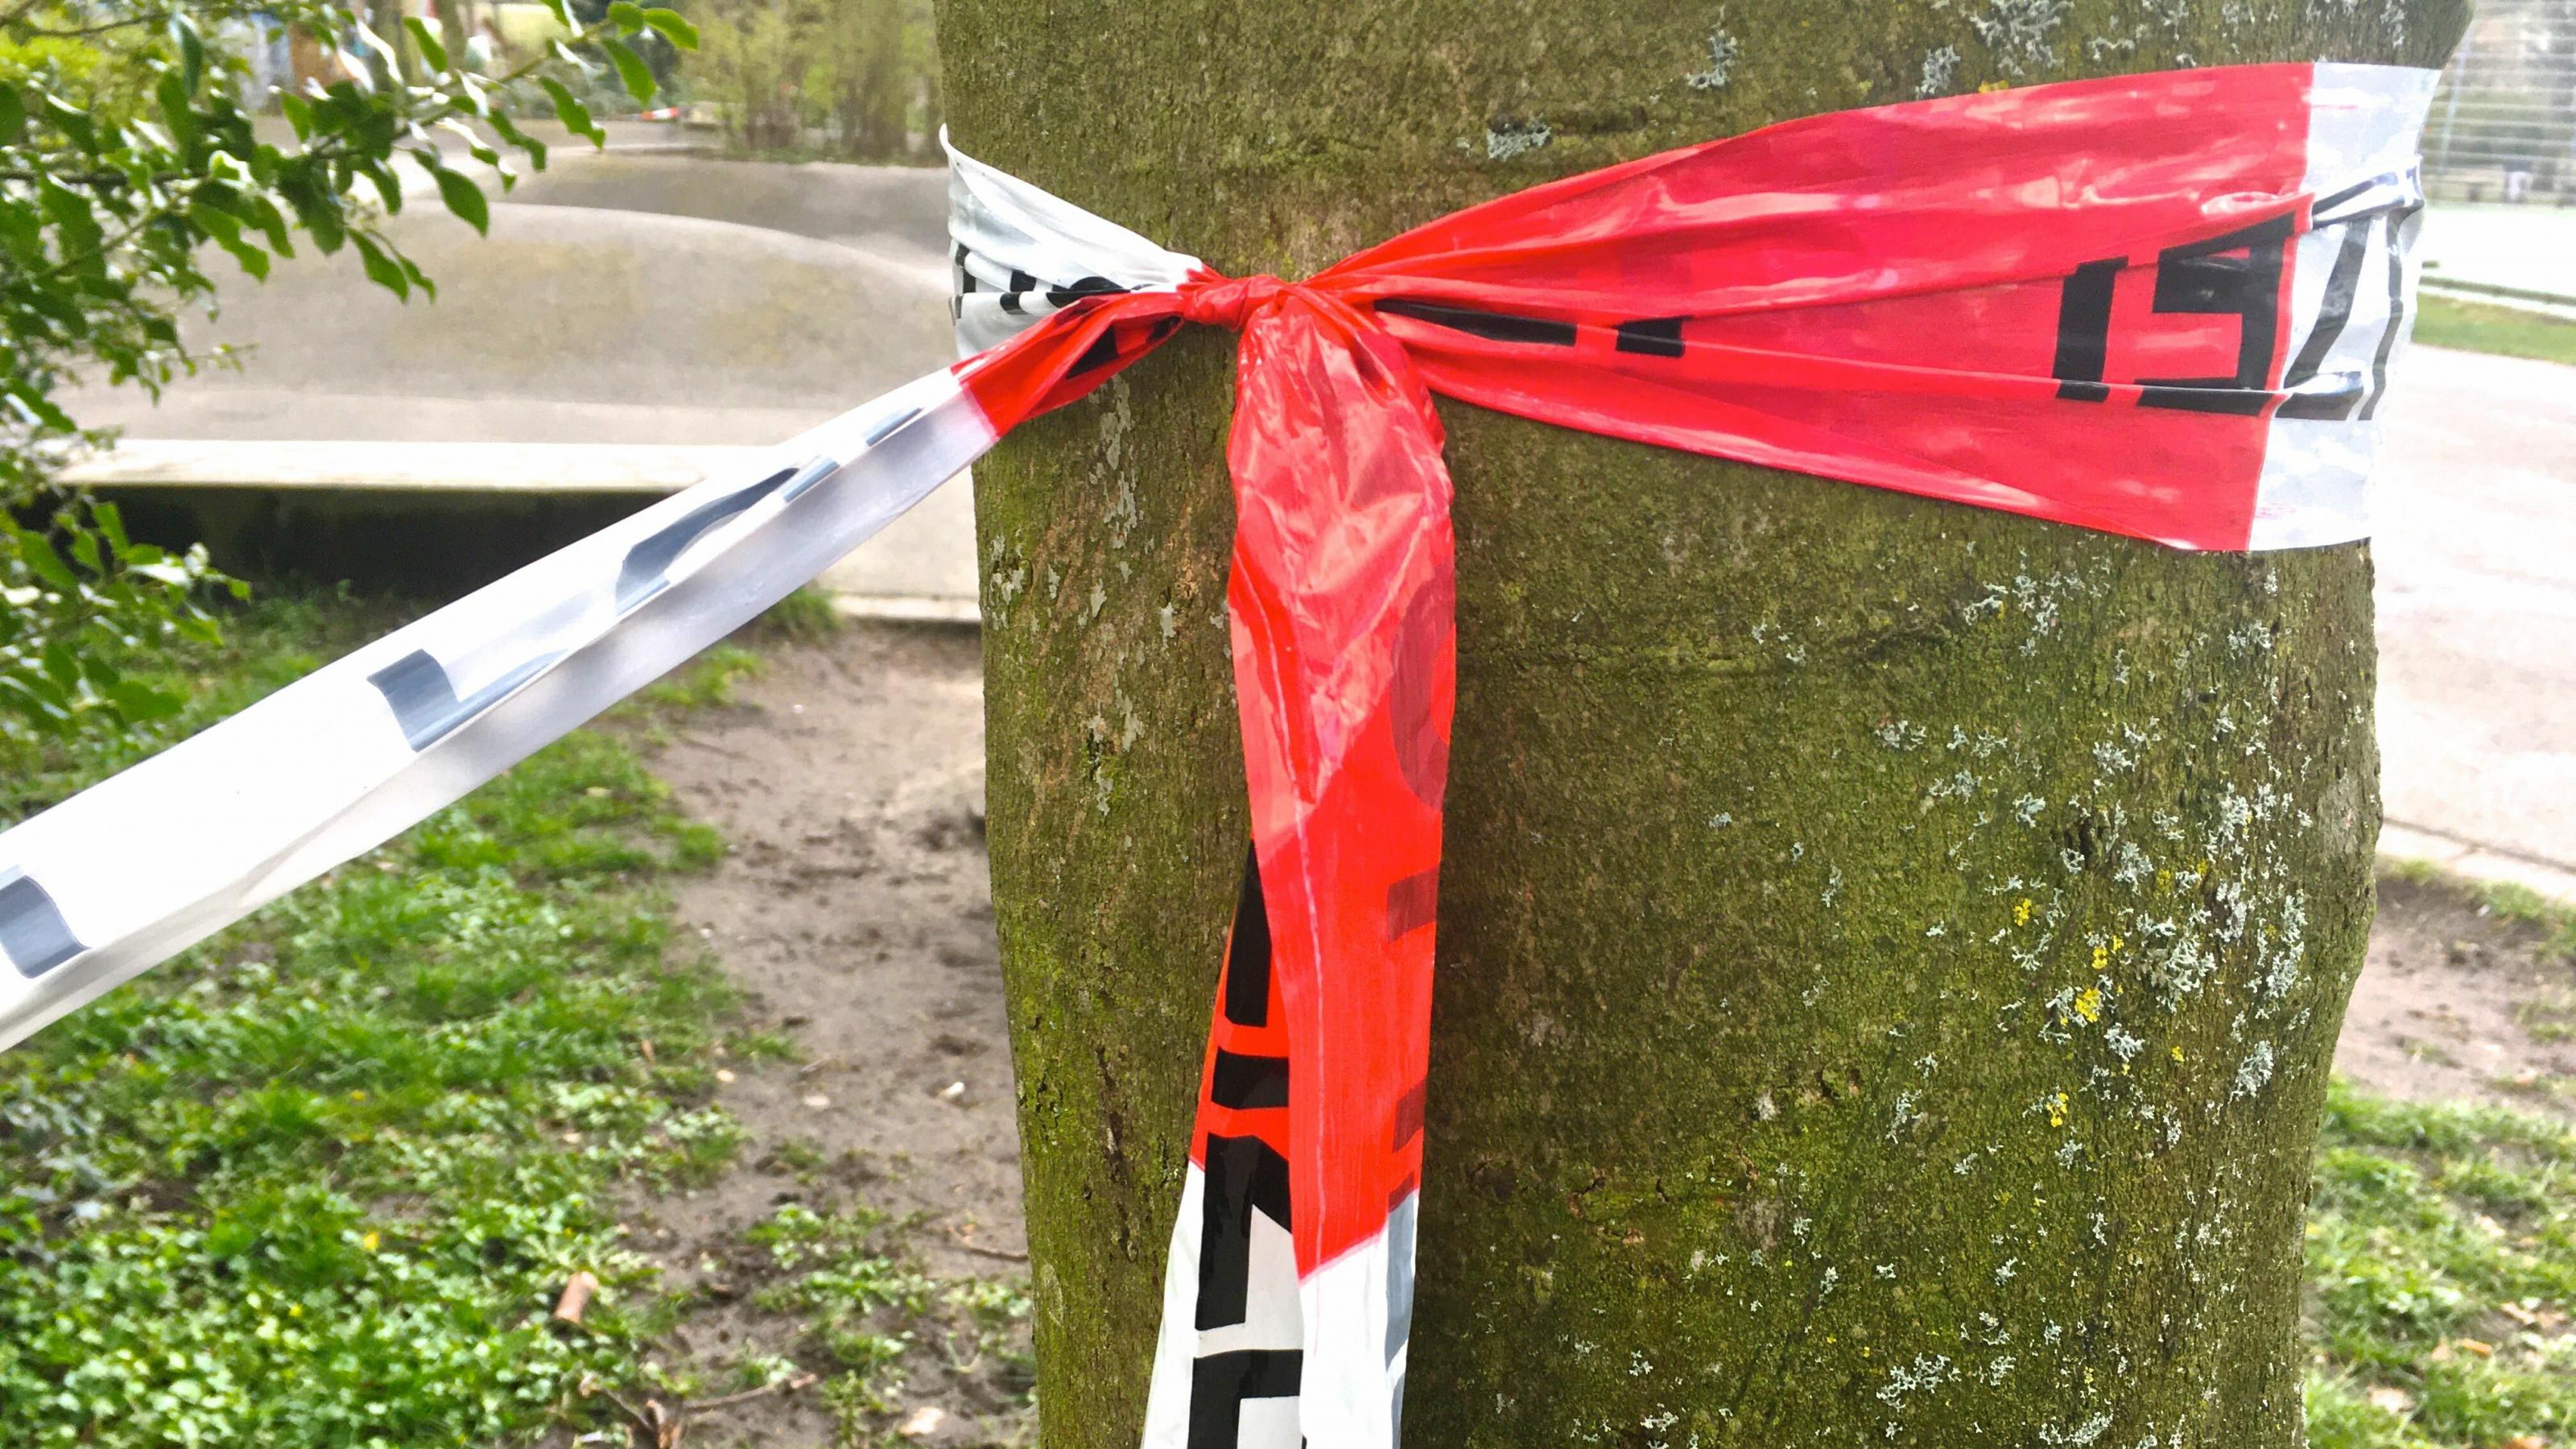 Ein rot-weißes Flatterband ist um einen Baumstamm geschlungen und dort verknotet. Er dient als Haltepunkt für die Absperrung eines Spielplatzes.